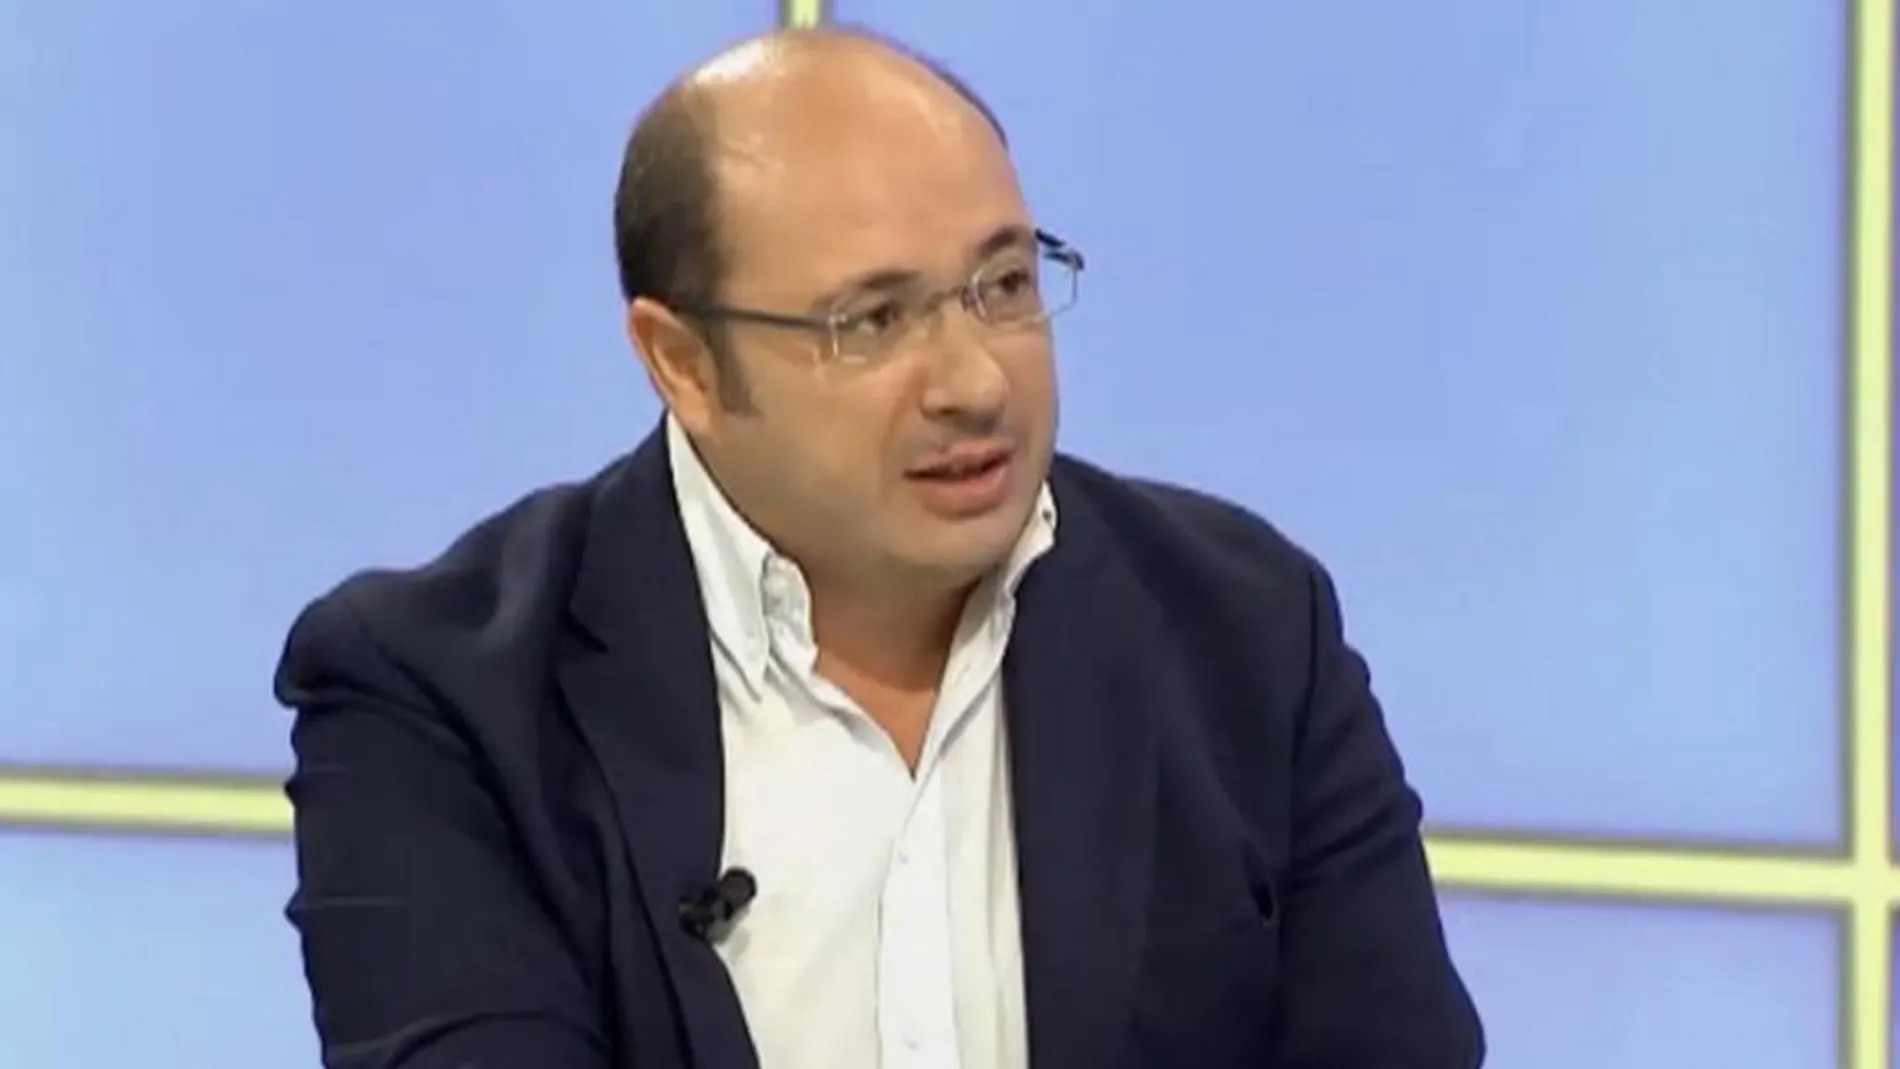 El presidente de la Región de Murcia, Pedro Antonio Sánchez, ayer en una entrevista en la televisión autonómica